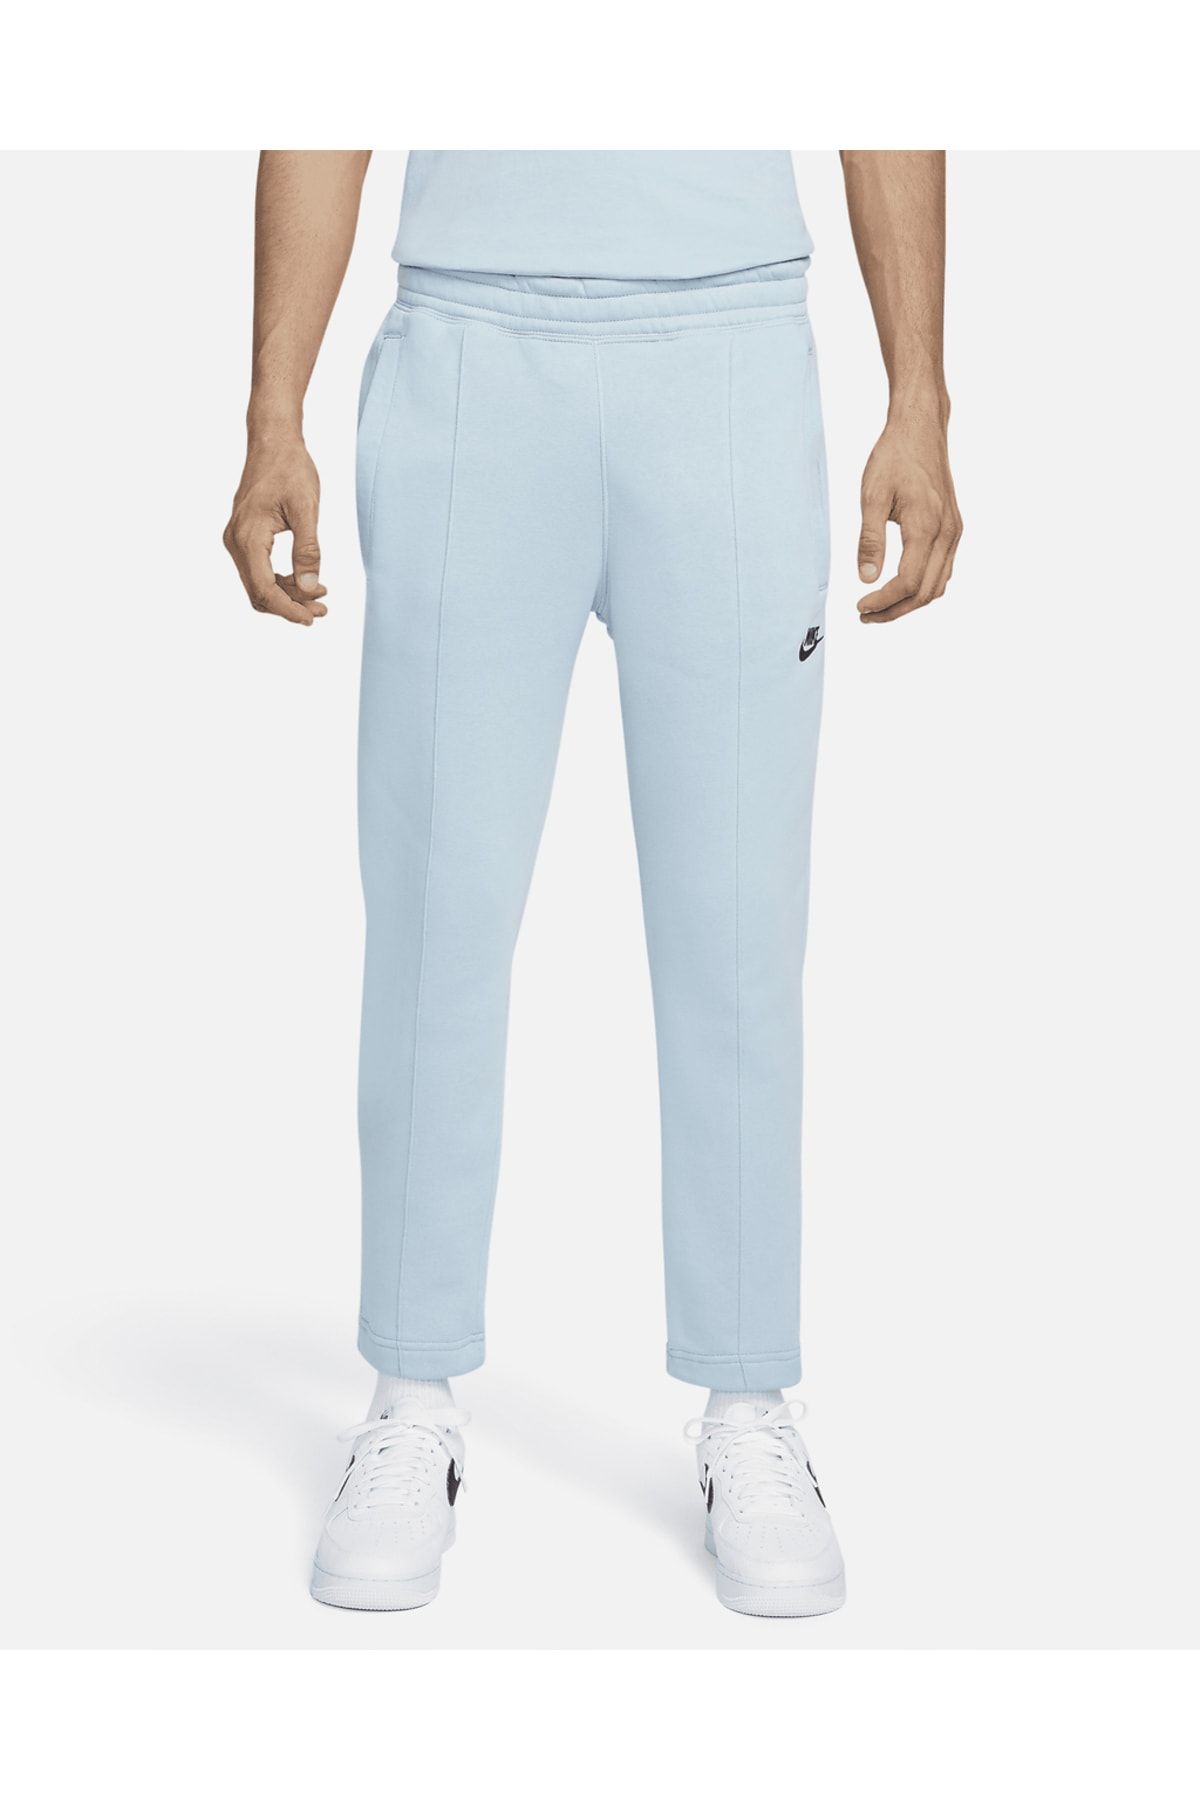 Nike M Nsw Flc Sportswear Açık Mavi Erkek Spor Eşofman Altı